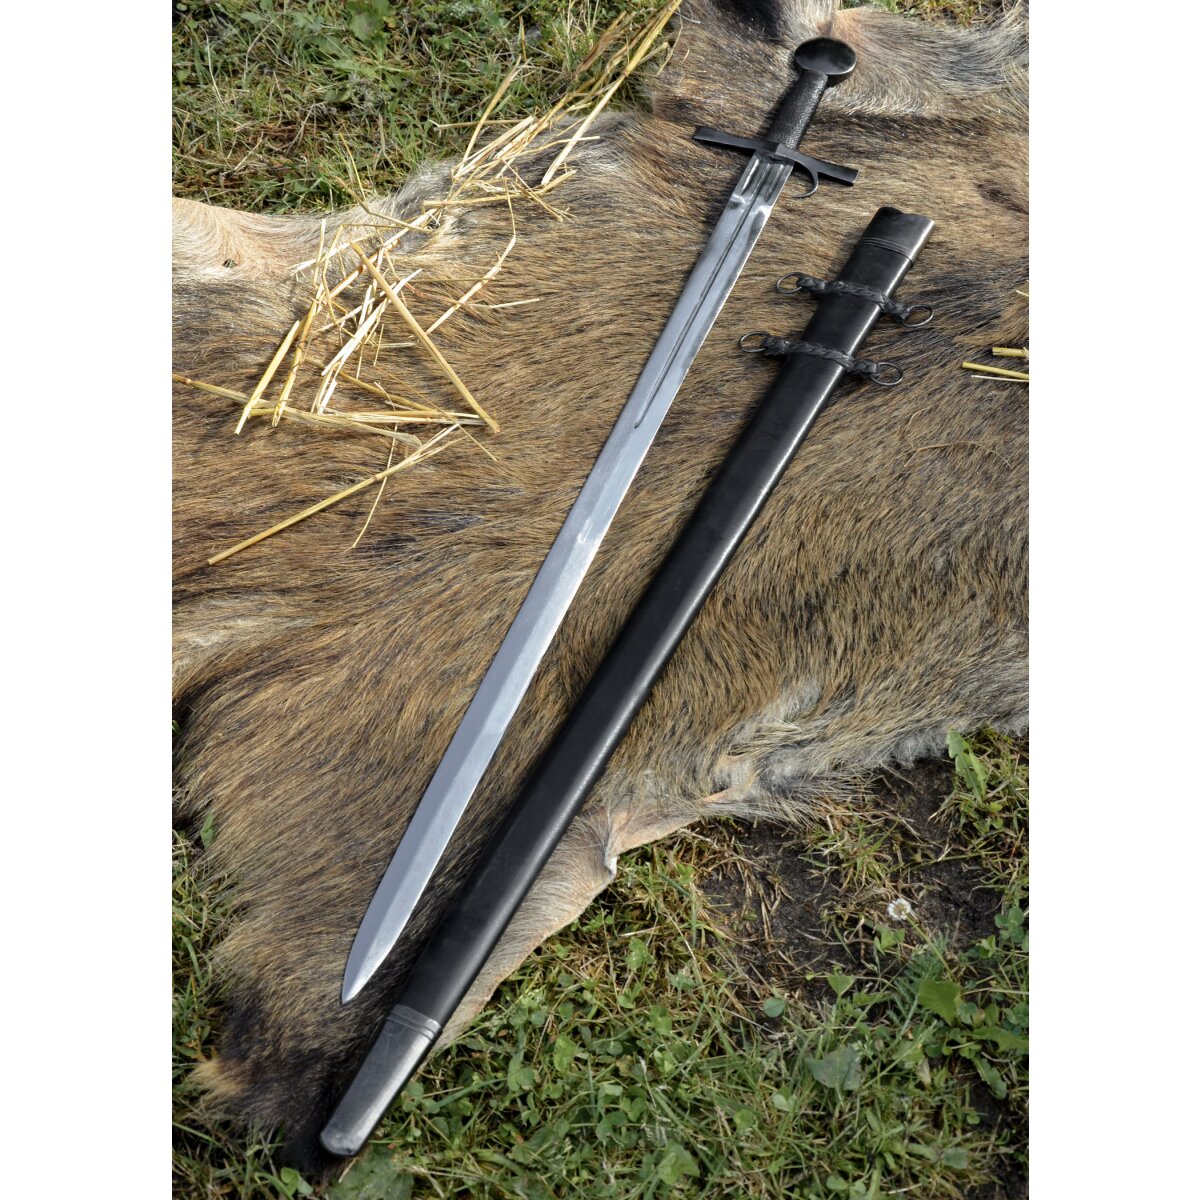 Spätmittelalter-Schwert mit Fingerschutz, Mailand...